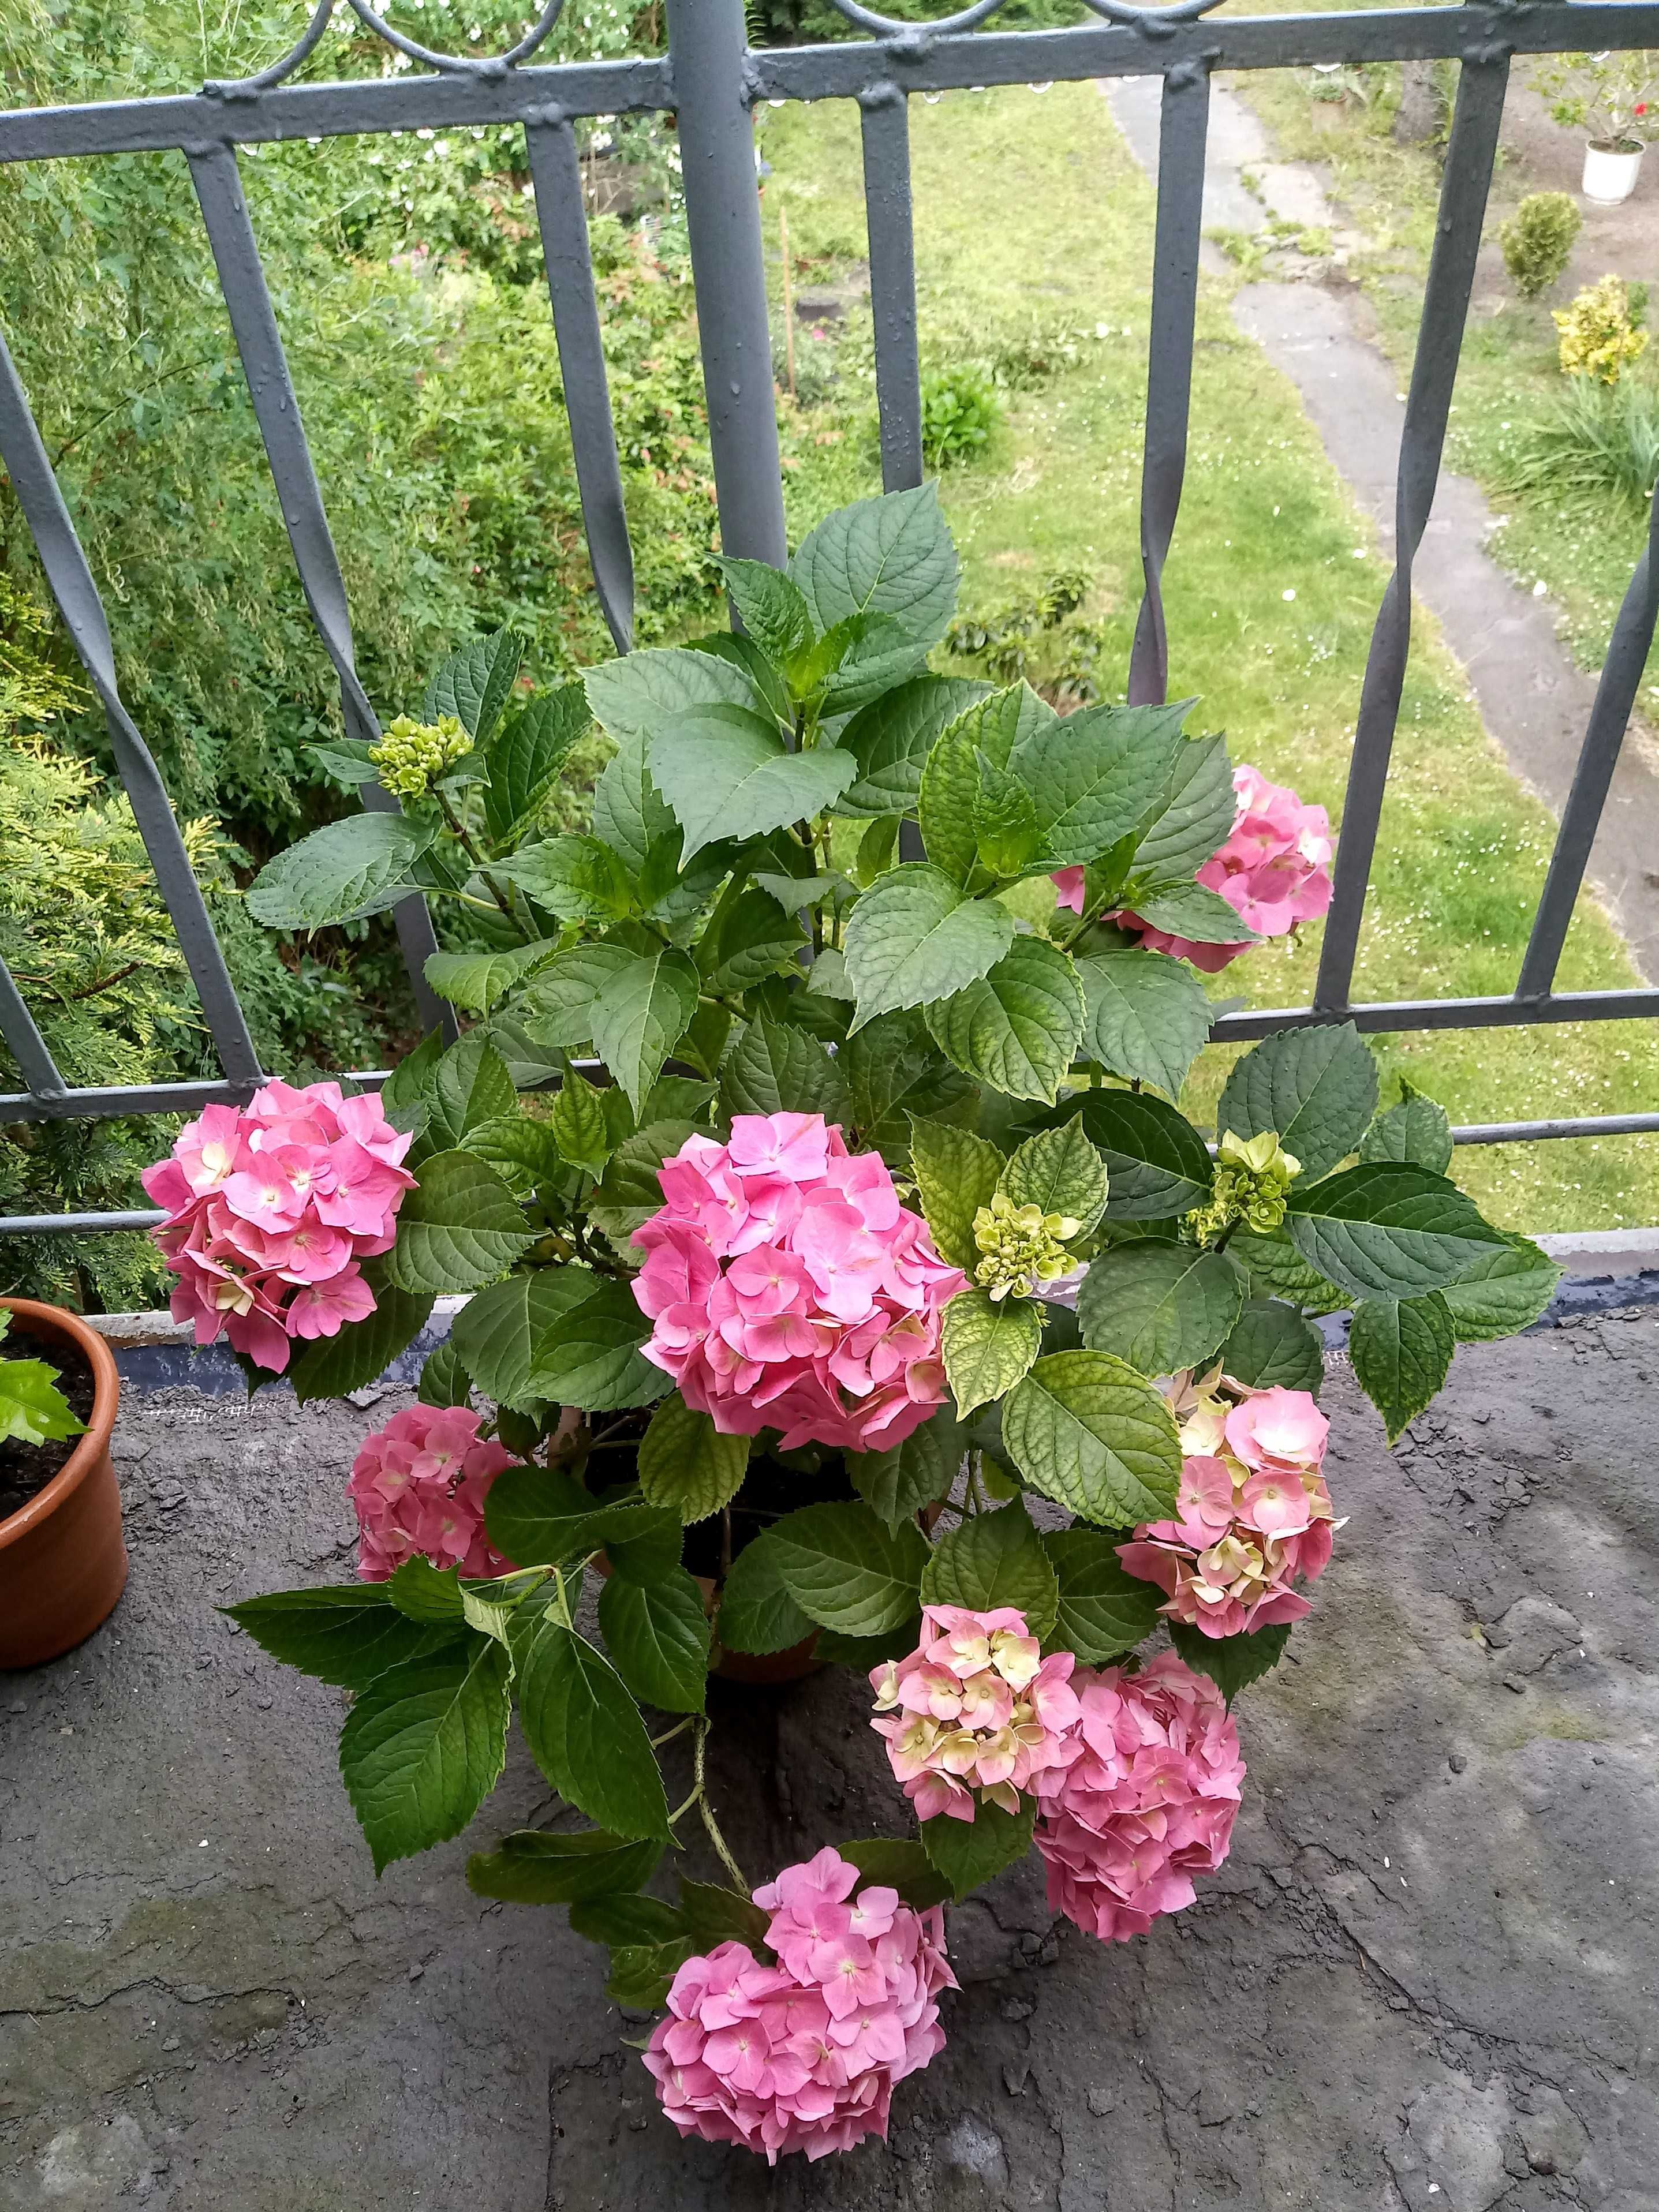 Hortensja ogrodowa różowy kwiat w doniczkach z pąkami. Duże krzaki.